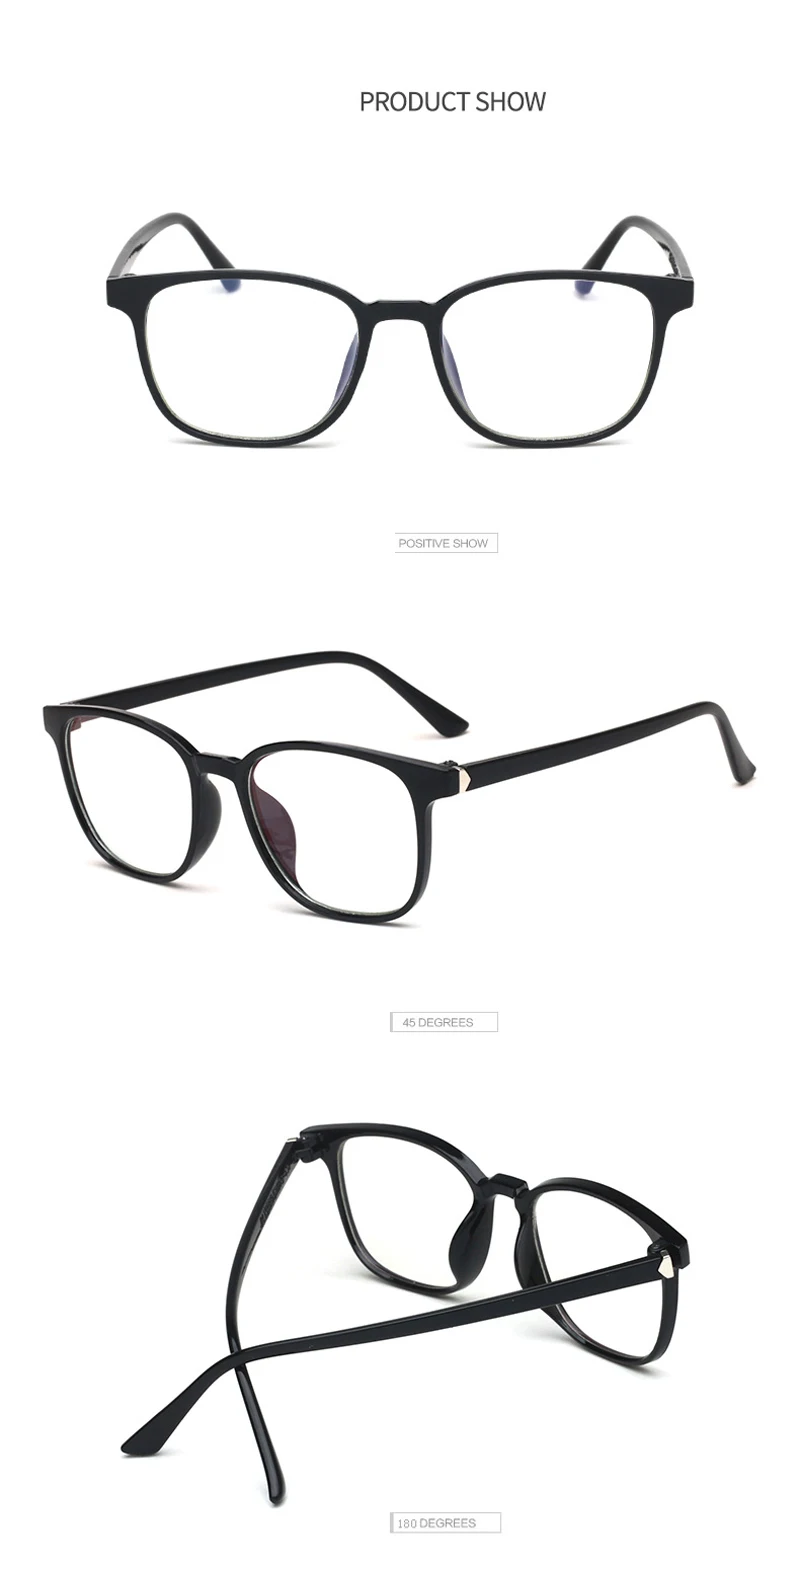 Zilead, квадратный анти-синий светильник, простые очки для женщин и мужчин, оптические очки, очки для близорукости, оправы для очков для женщин и мужчин